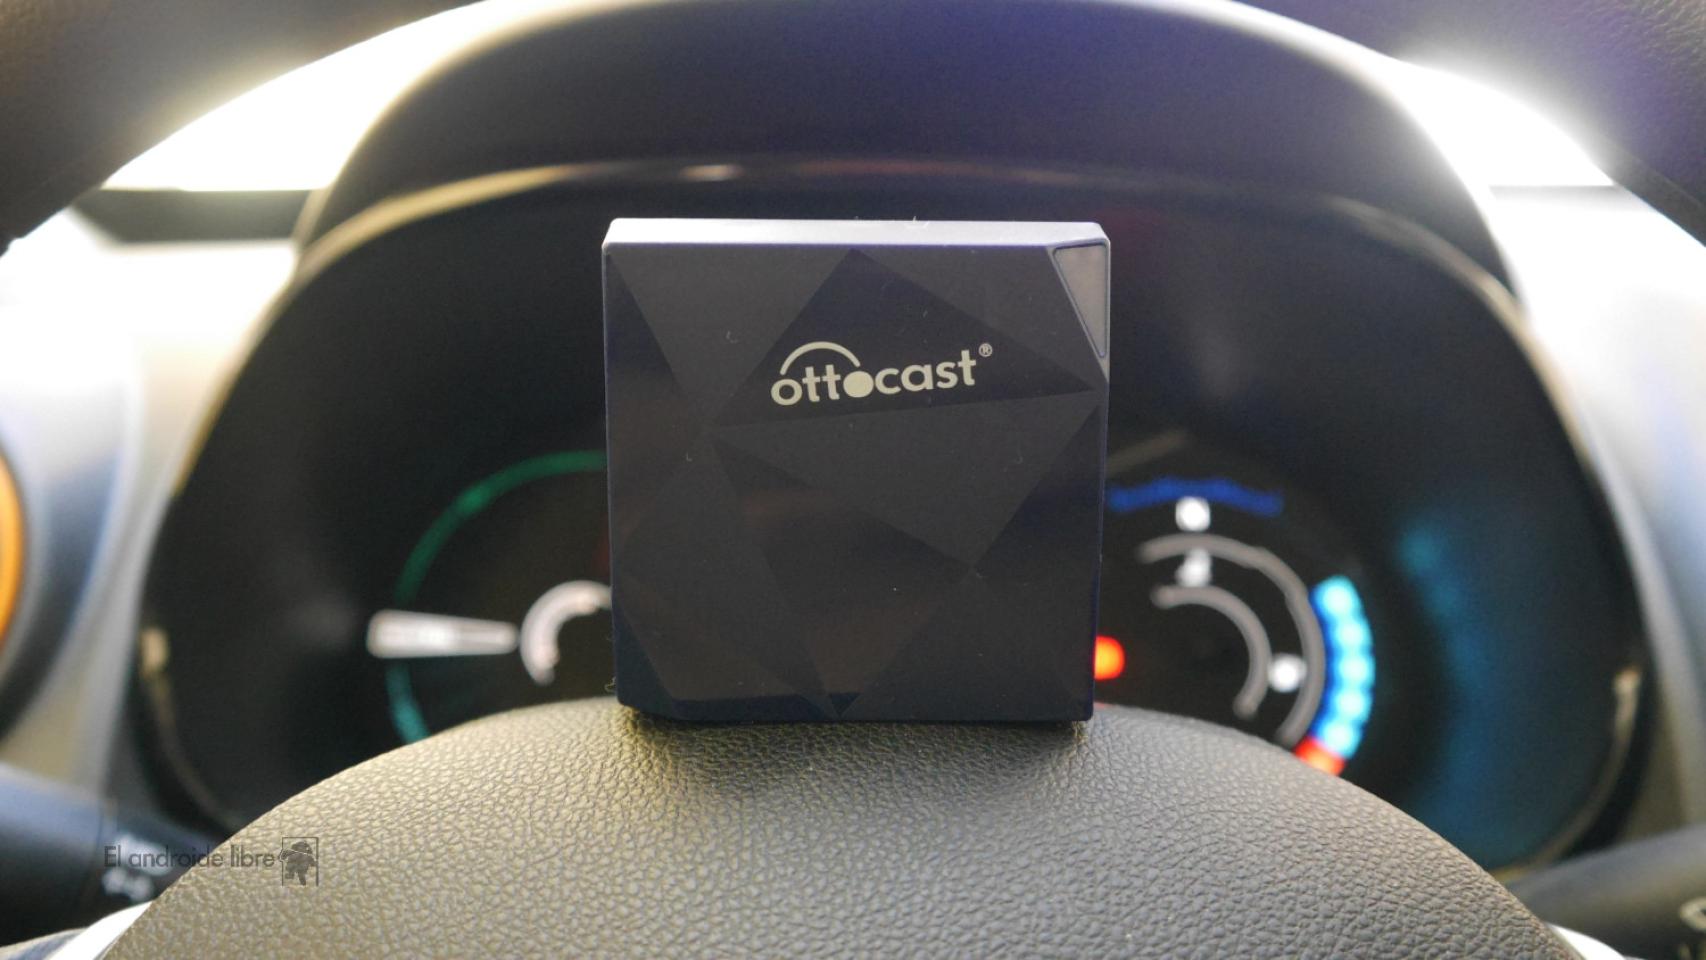 Ottocast A2Air Pro, un adaptador para tener Android Auto